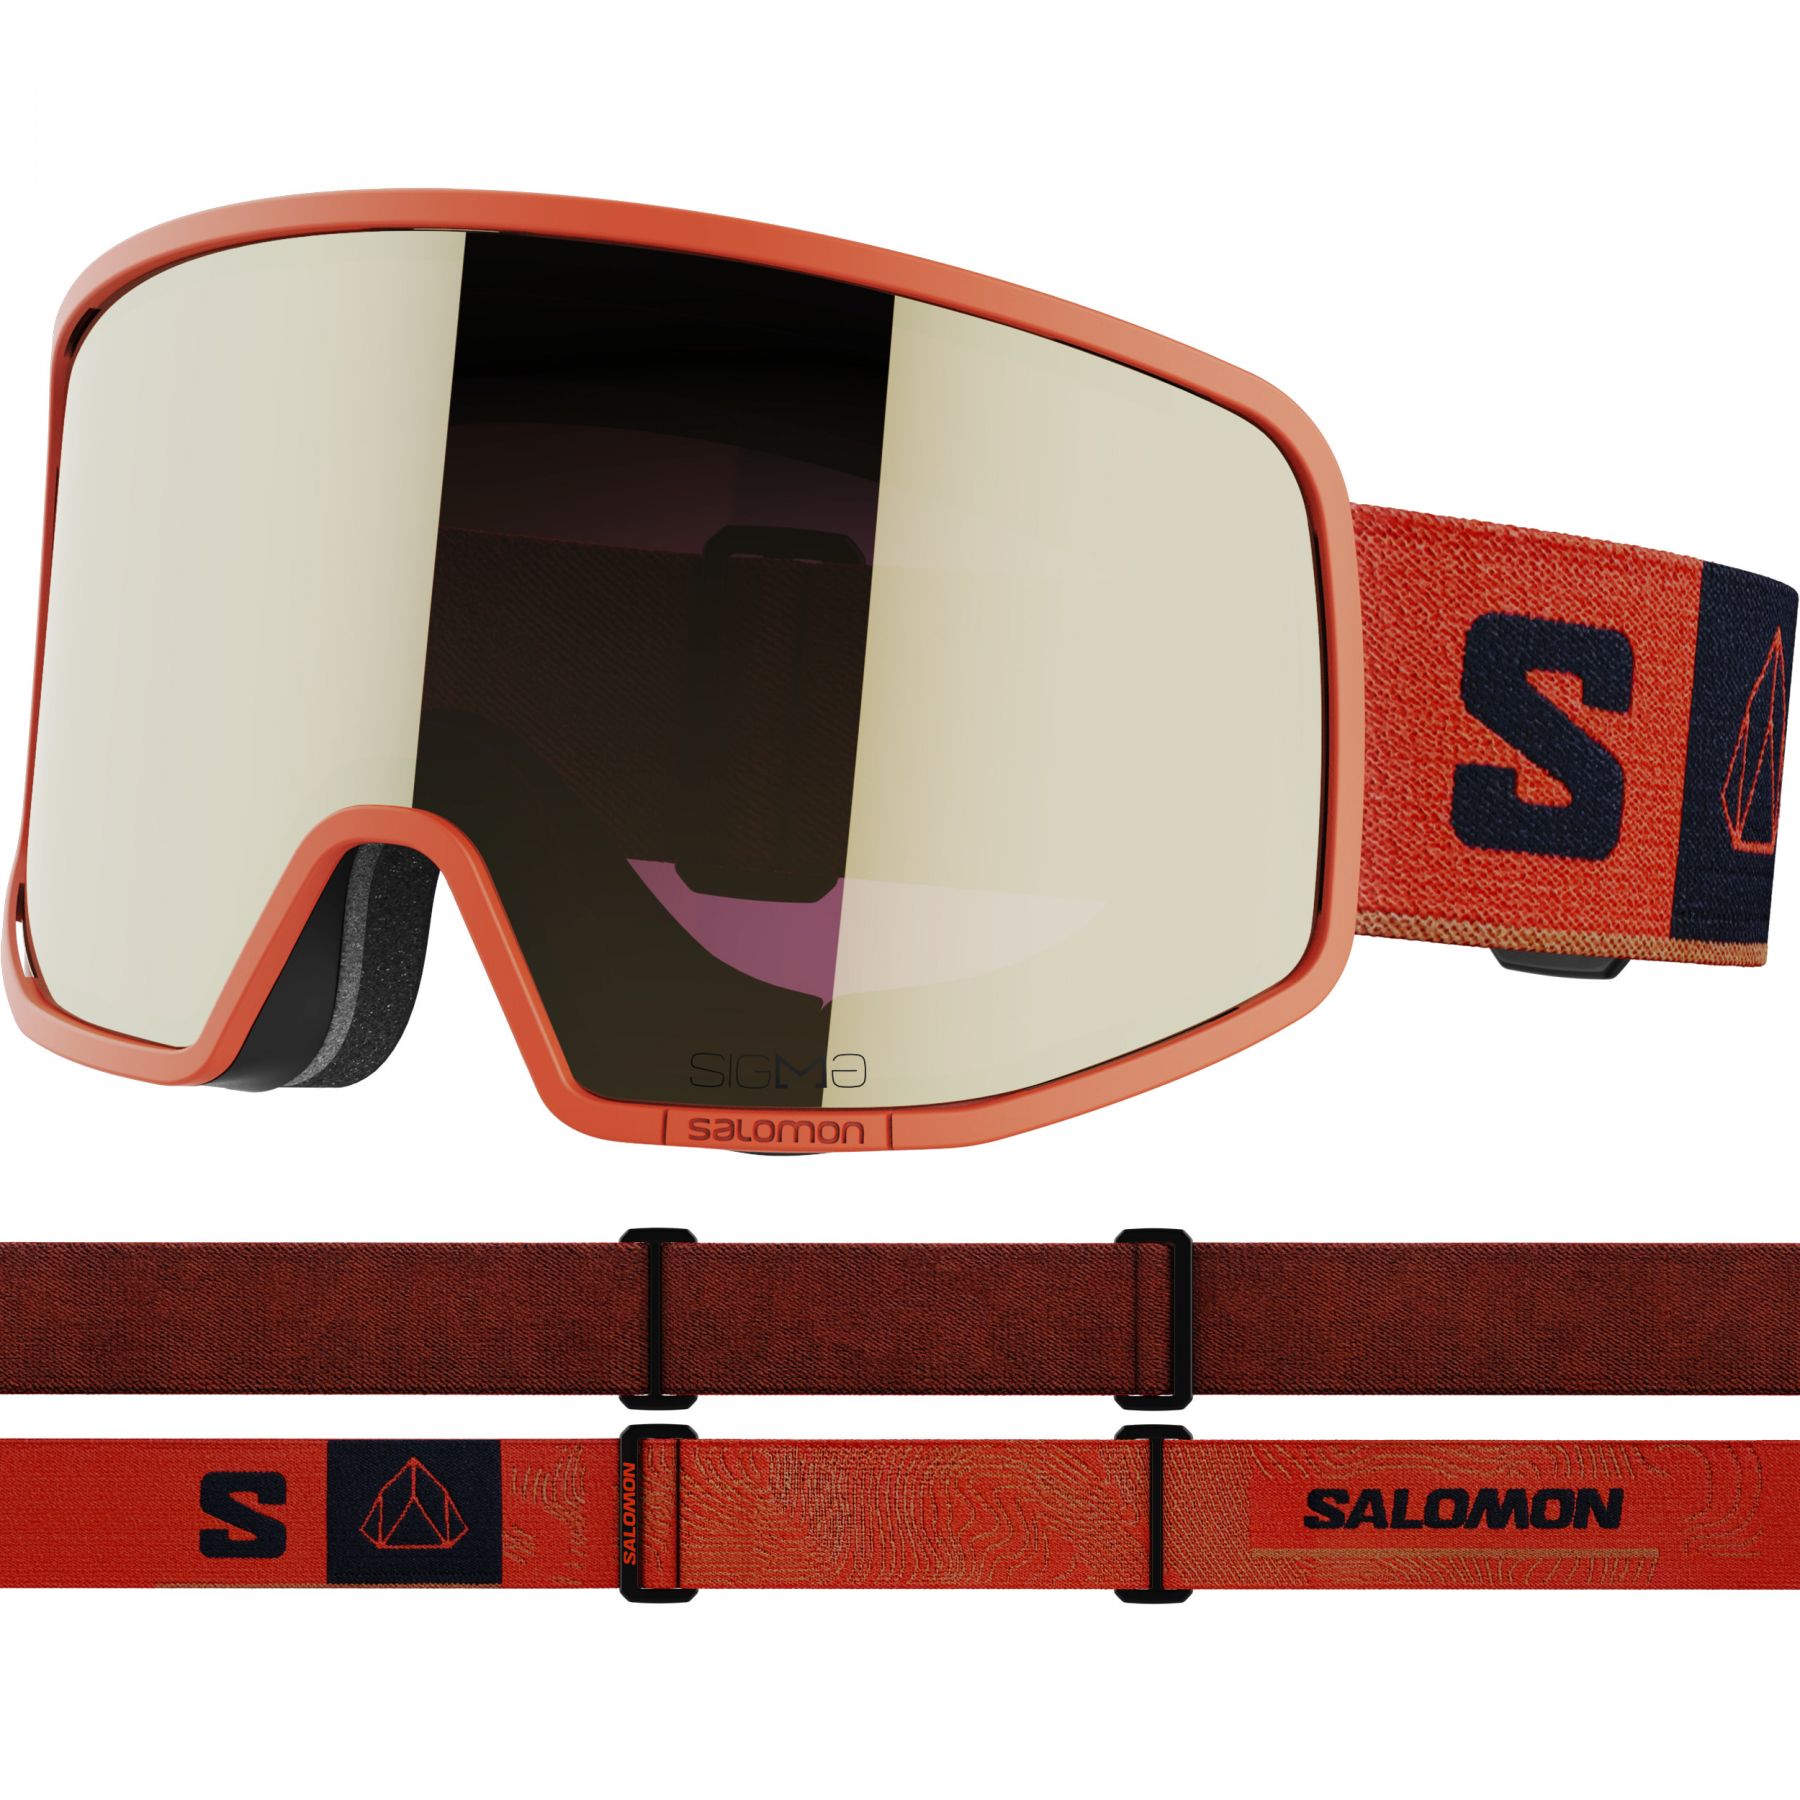 Billede af Salomon Lo Fi Sigma, skibriller, orange hos Skisport.dk